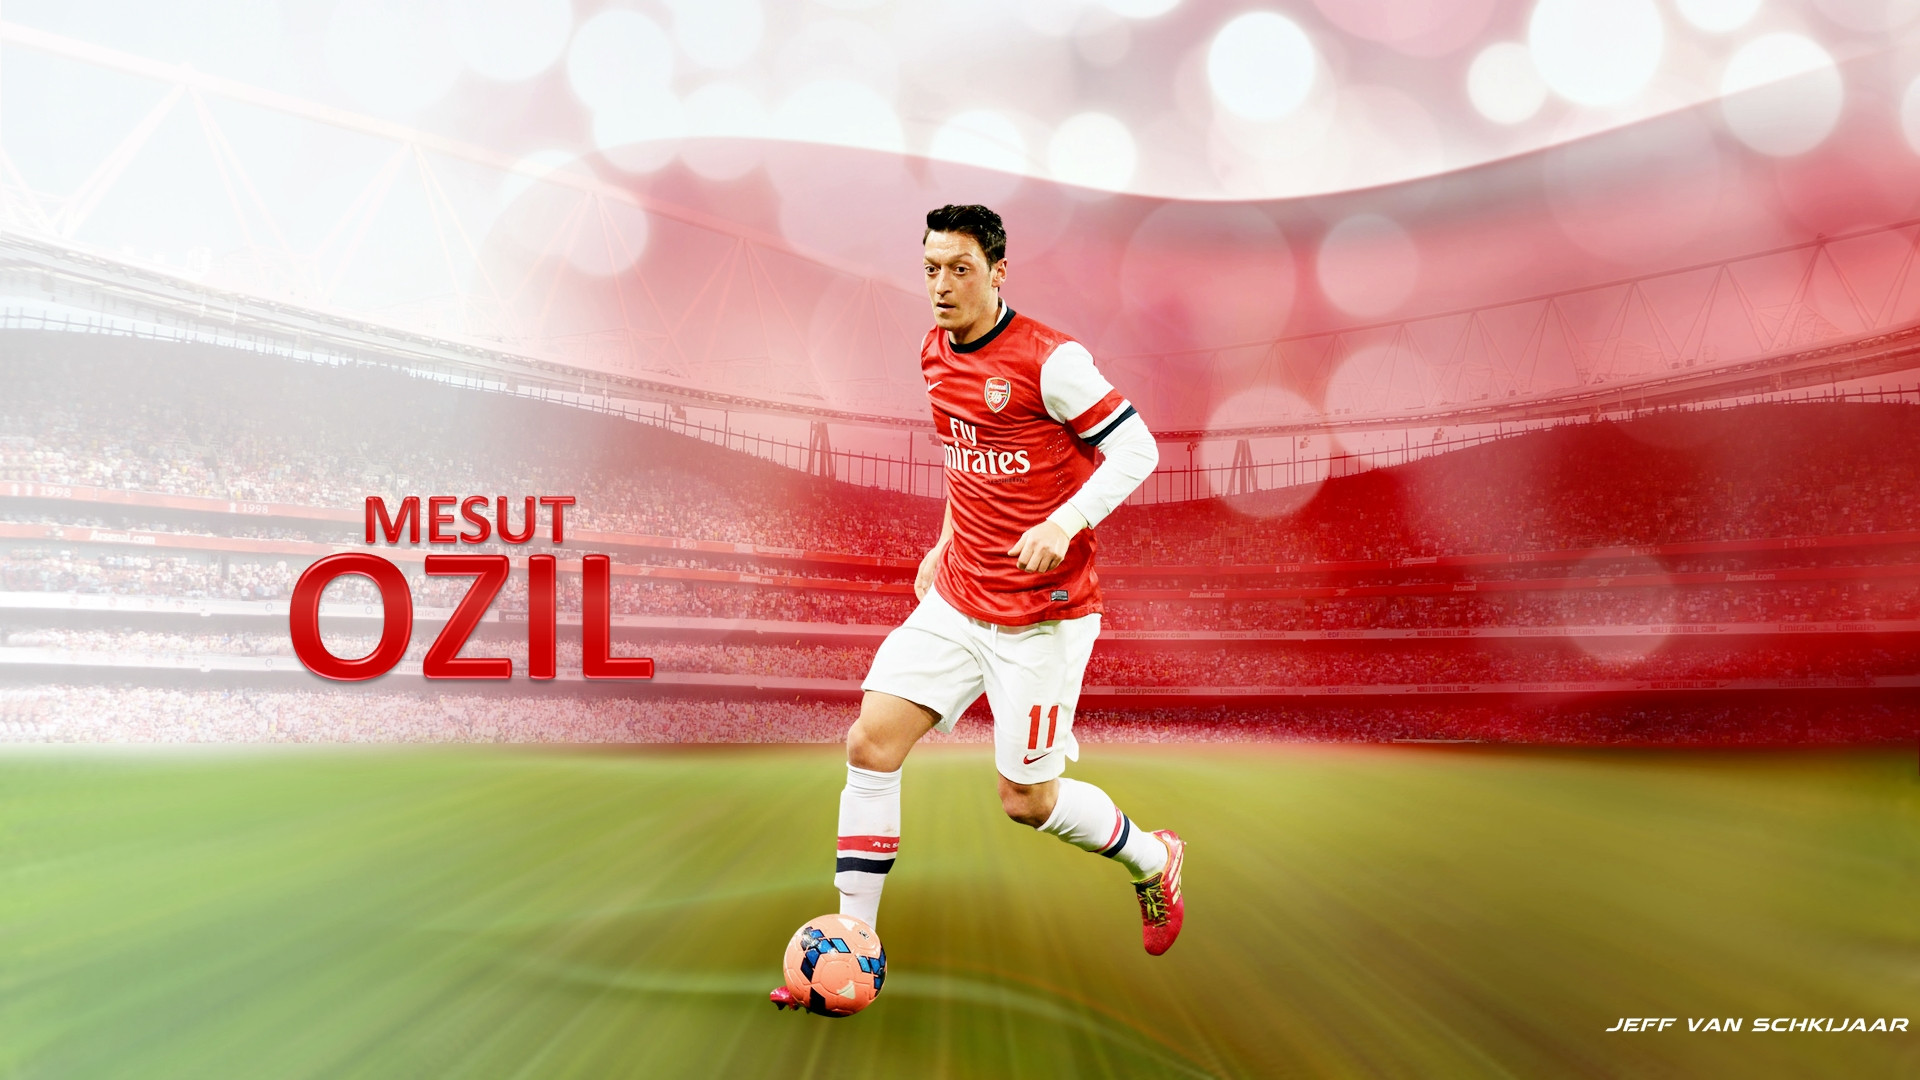 Mesut Ozil Arsenal Football Club High Quality Wallpaper